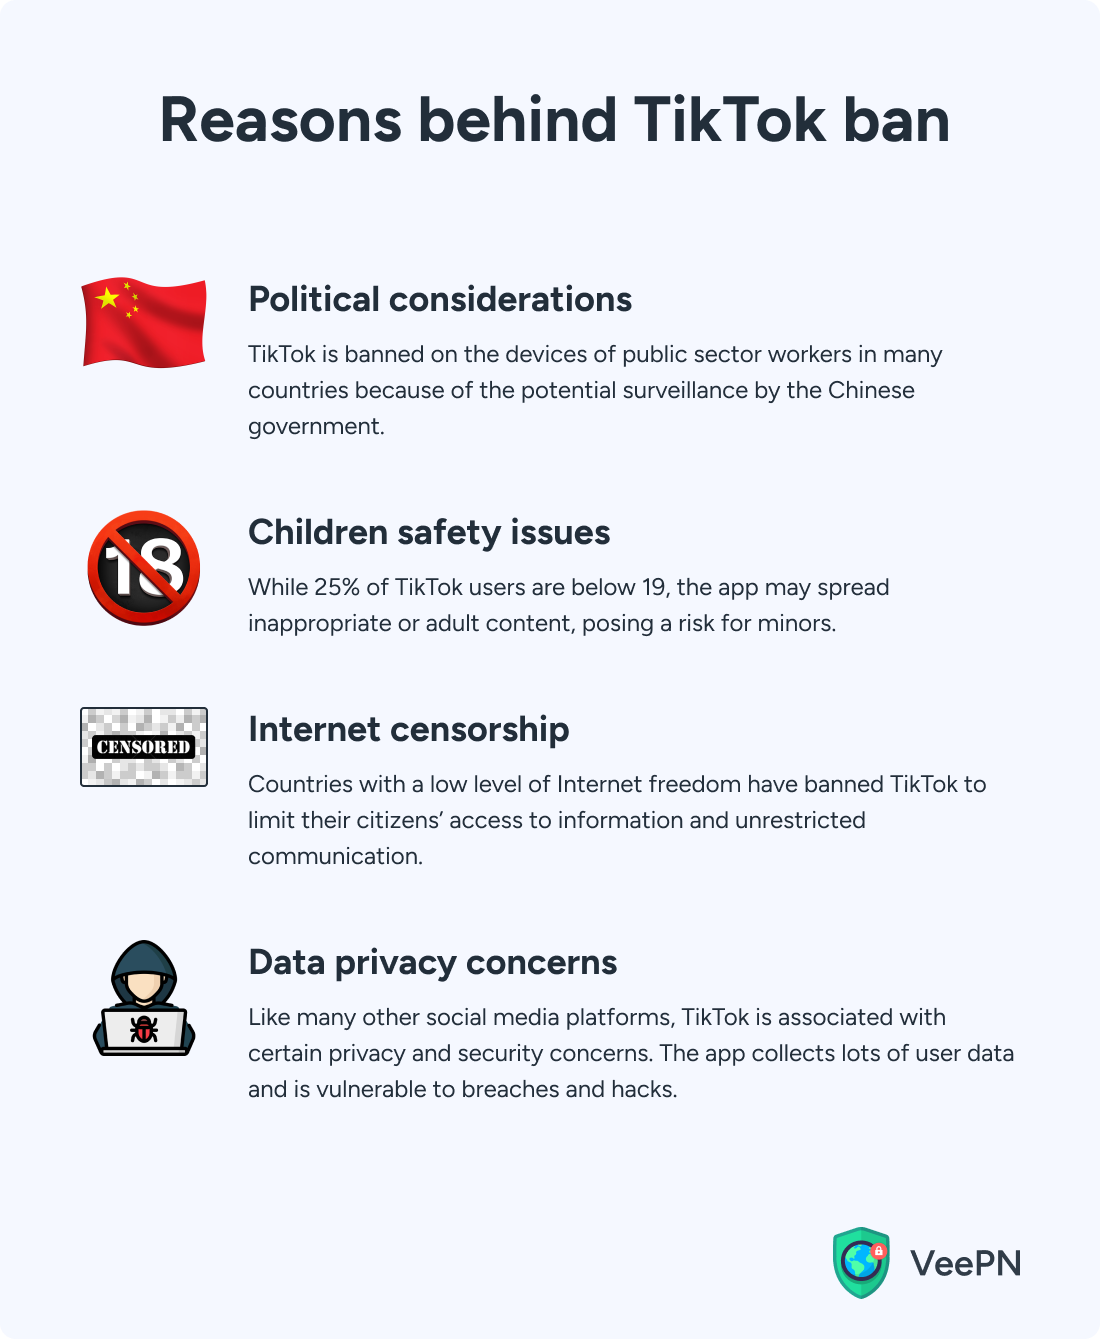 Main reasons behind TikTok bans